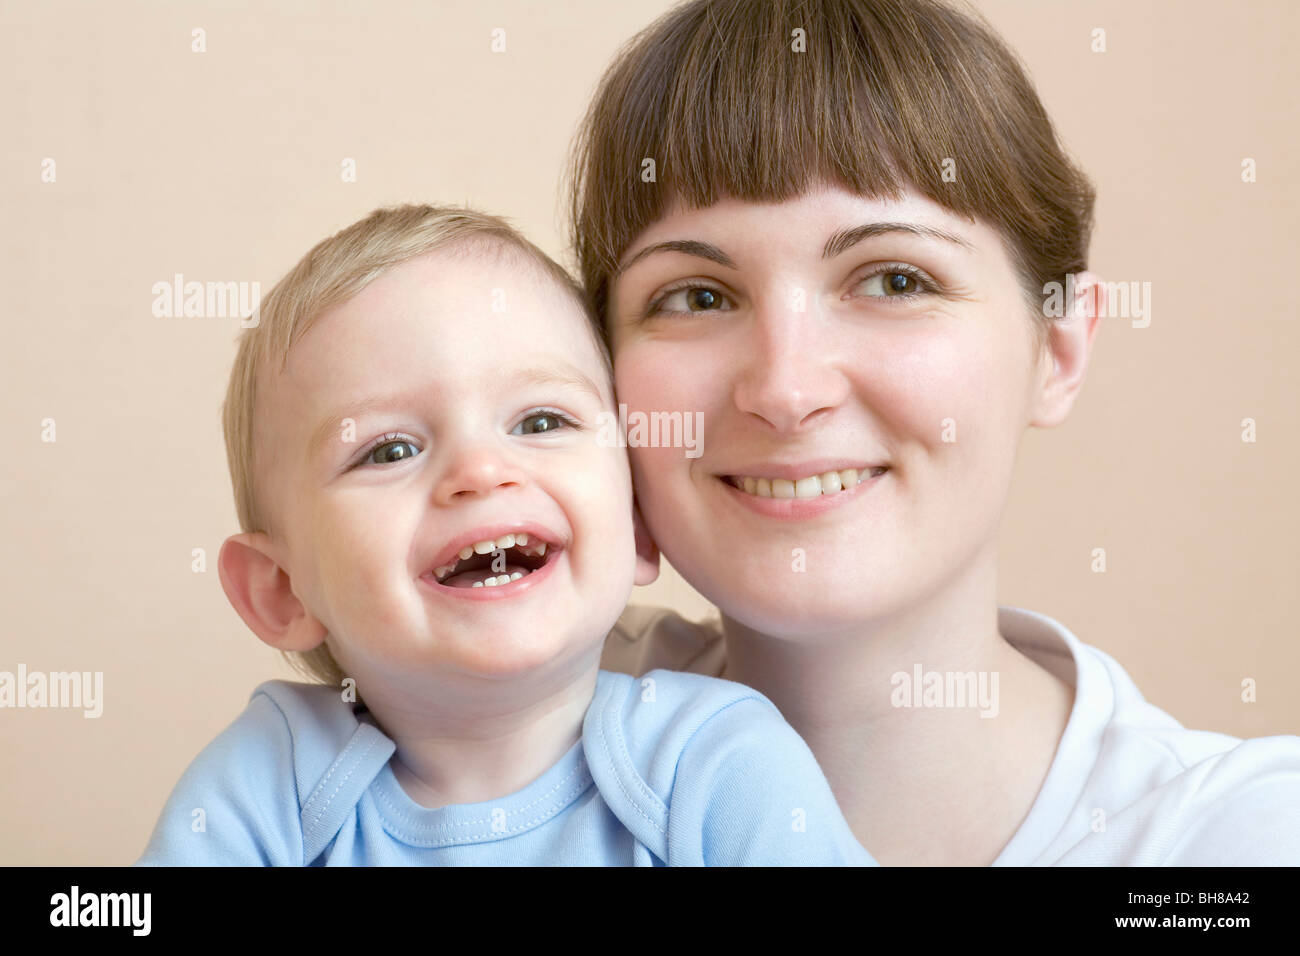 Eine Frau und ihr Baby, Portrait, Studio gedreht Stockfoto